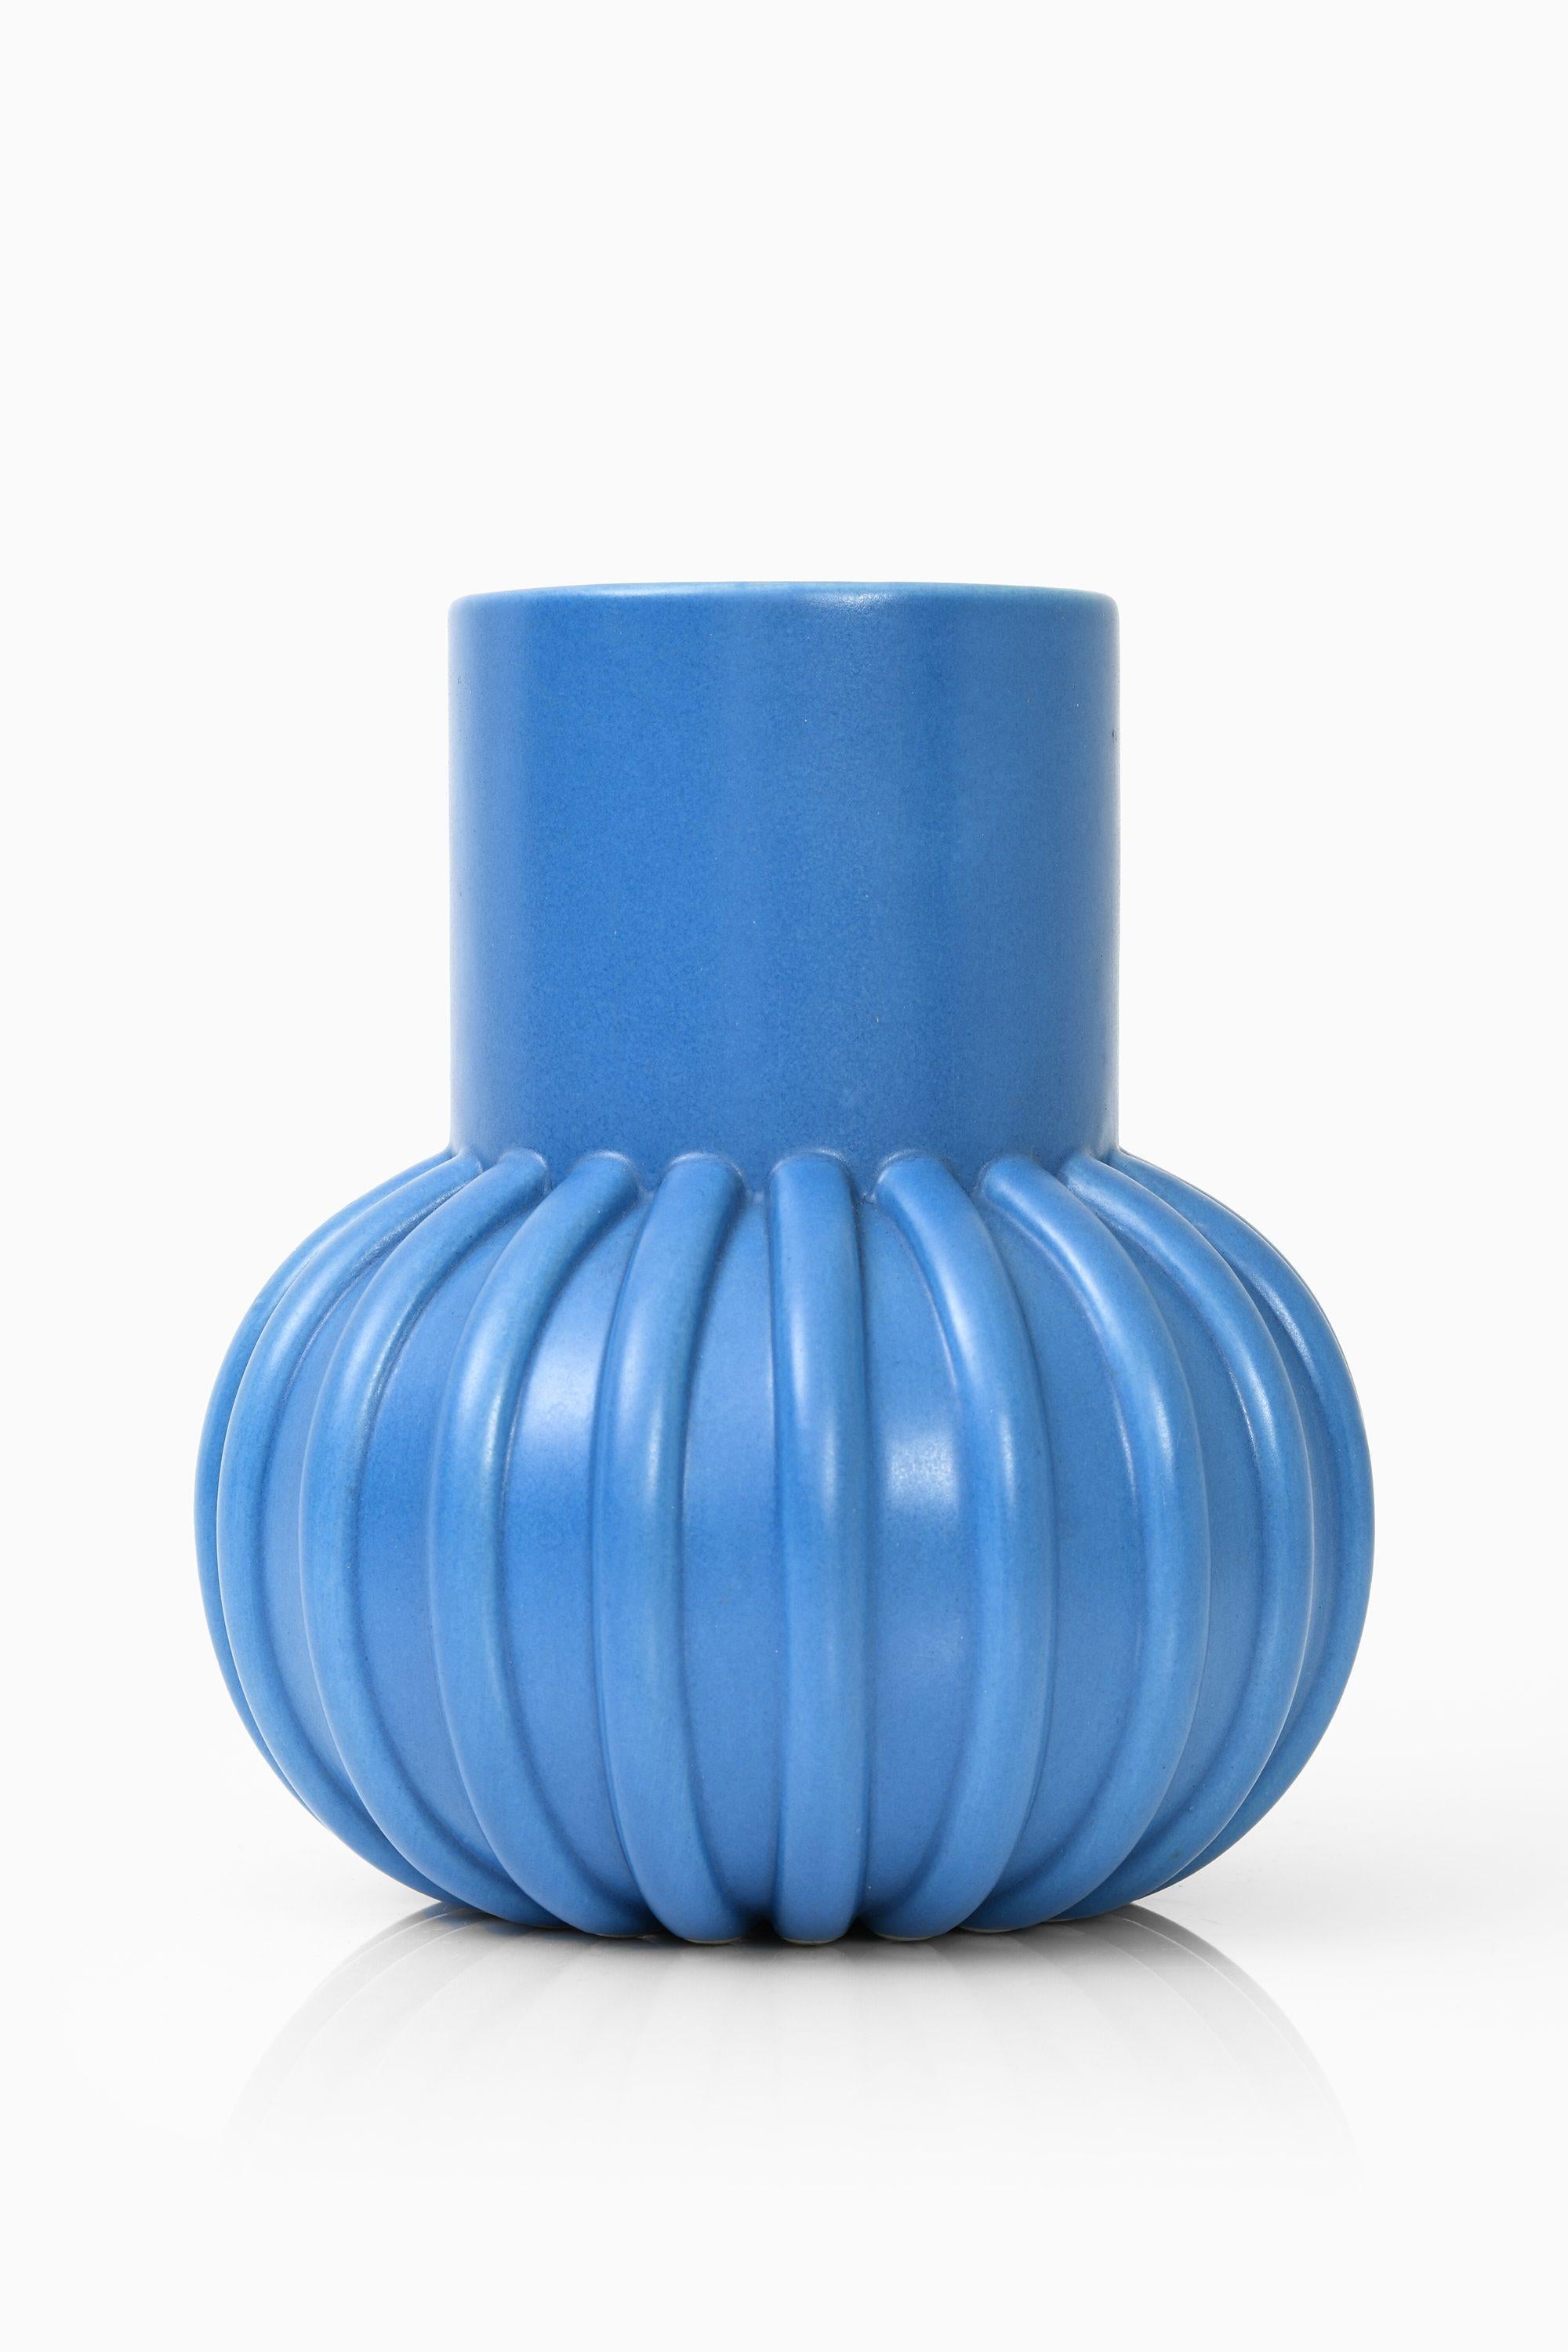 Keramik-Vase, 1960er Jahre

Zusätzliche Informationen:
Stil: Mitte des Jahrhunderts, skandinavisch
Abmessungen (B x T x H): 15,5 x 15,5 x 18 cm
Zustand: Guter Vintage-Zustand, mit kleinen Gebrauchsspuren